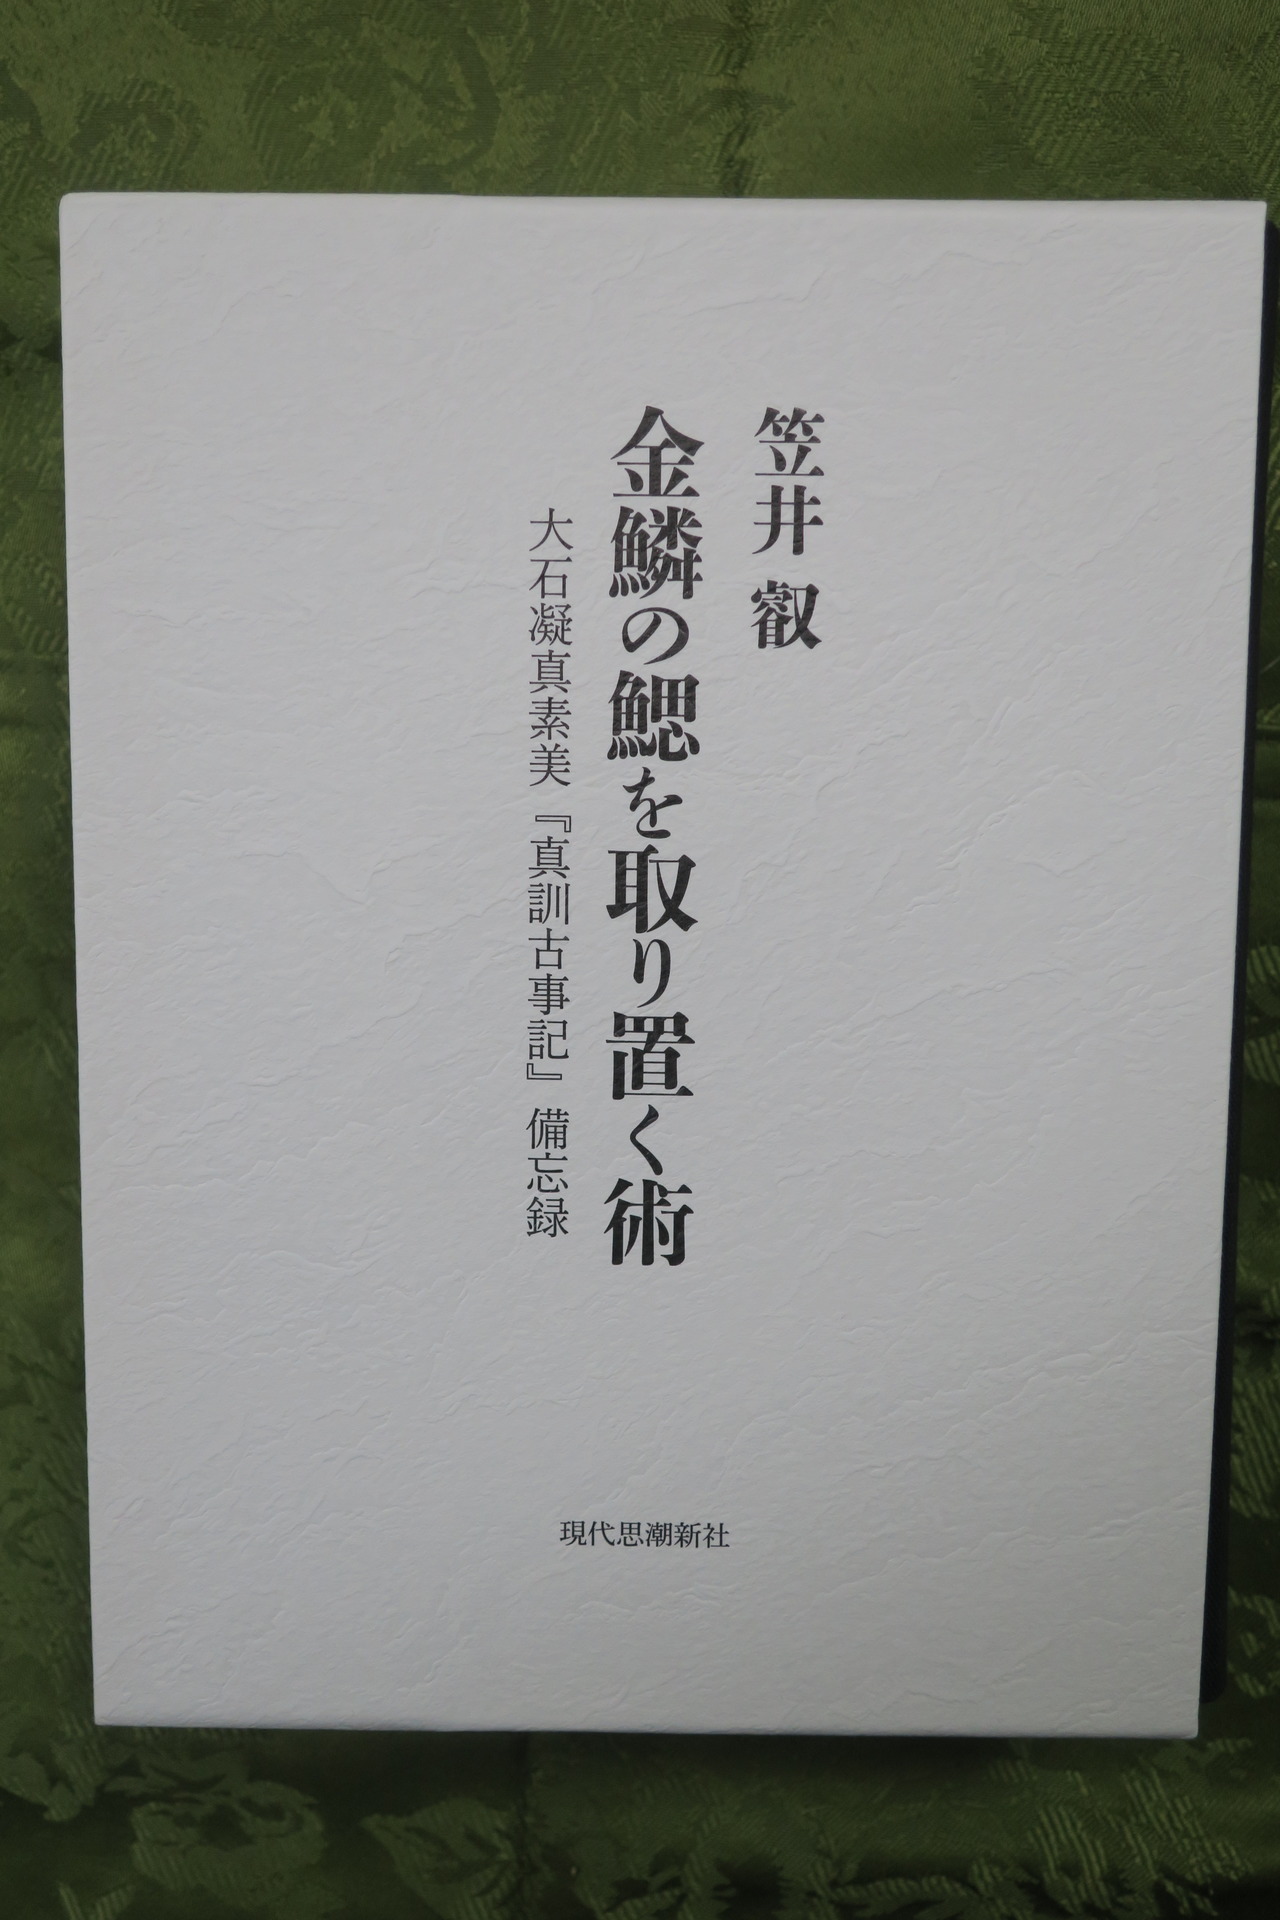 熊谷守一展、竹橋の近美で開催中＋笠井叡さんの大著を頂戴しました